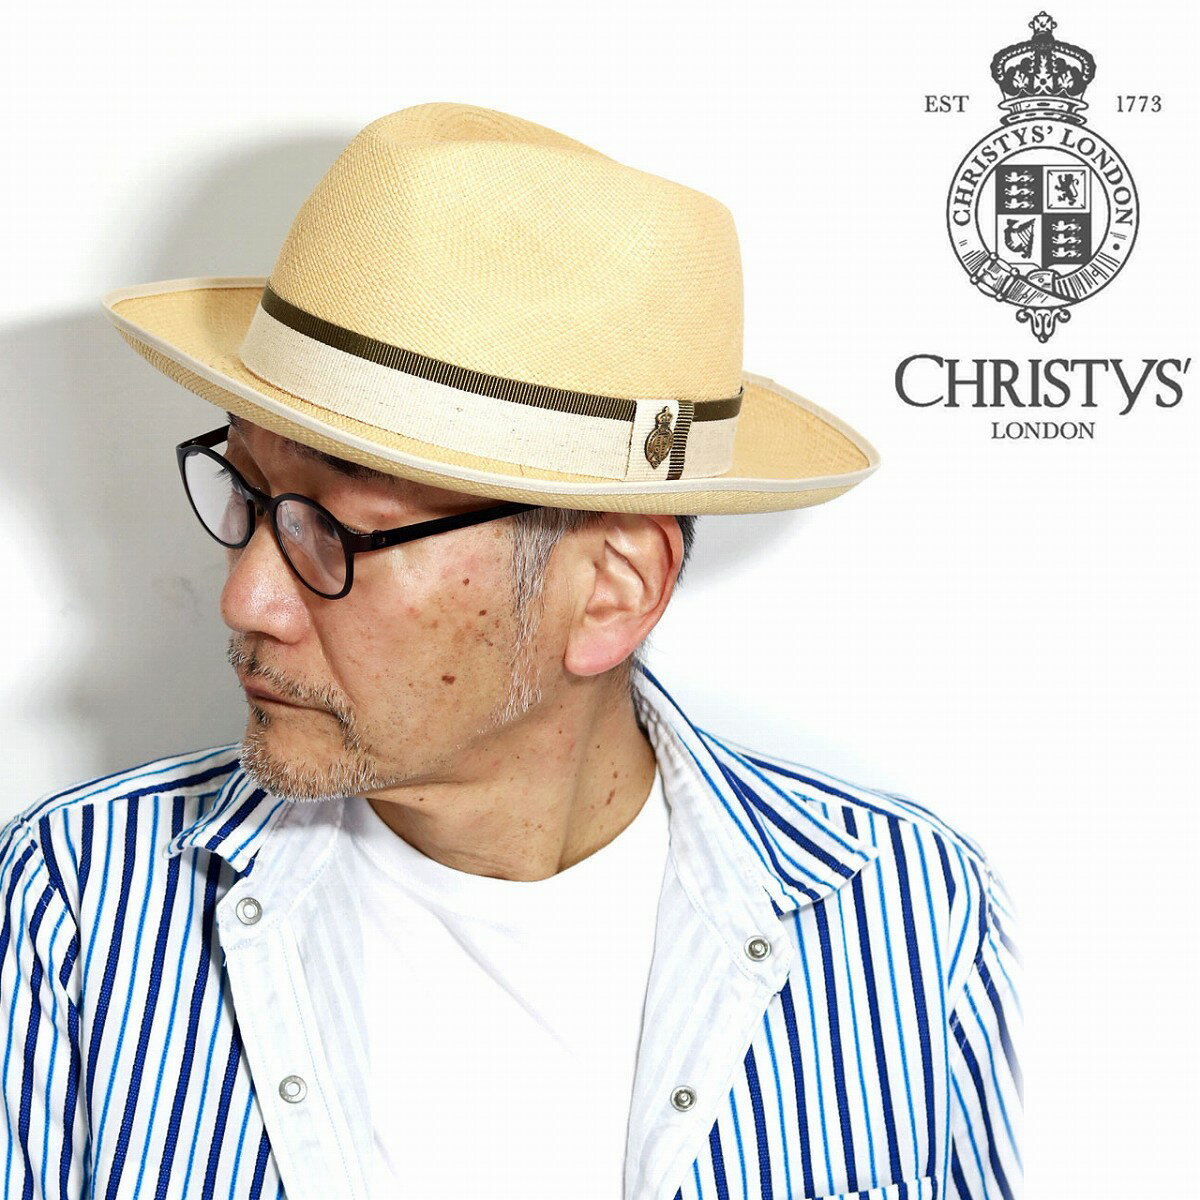 クリスティーズ ロンドン パナマハット ブランド Christys London ハット パナマ帽 大きいサイズ 夏 帽子 つば広 お洒落 メンズ 中折れハット クラシック イギリス製 ストローハット ナチュラル [ panama hat ] [ wide-brim hat ] ギフト プレゼント 父の日